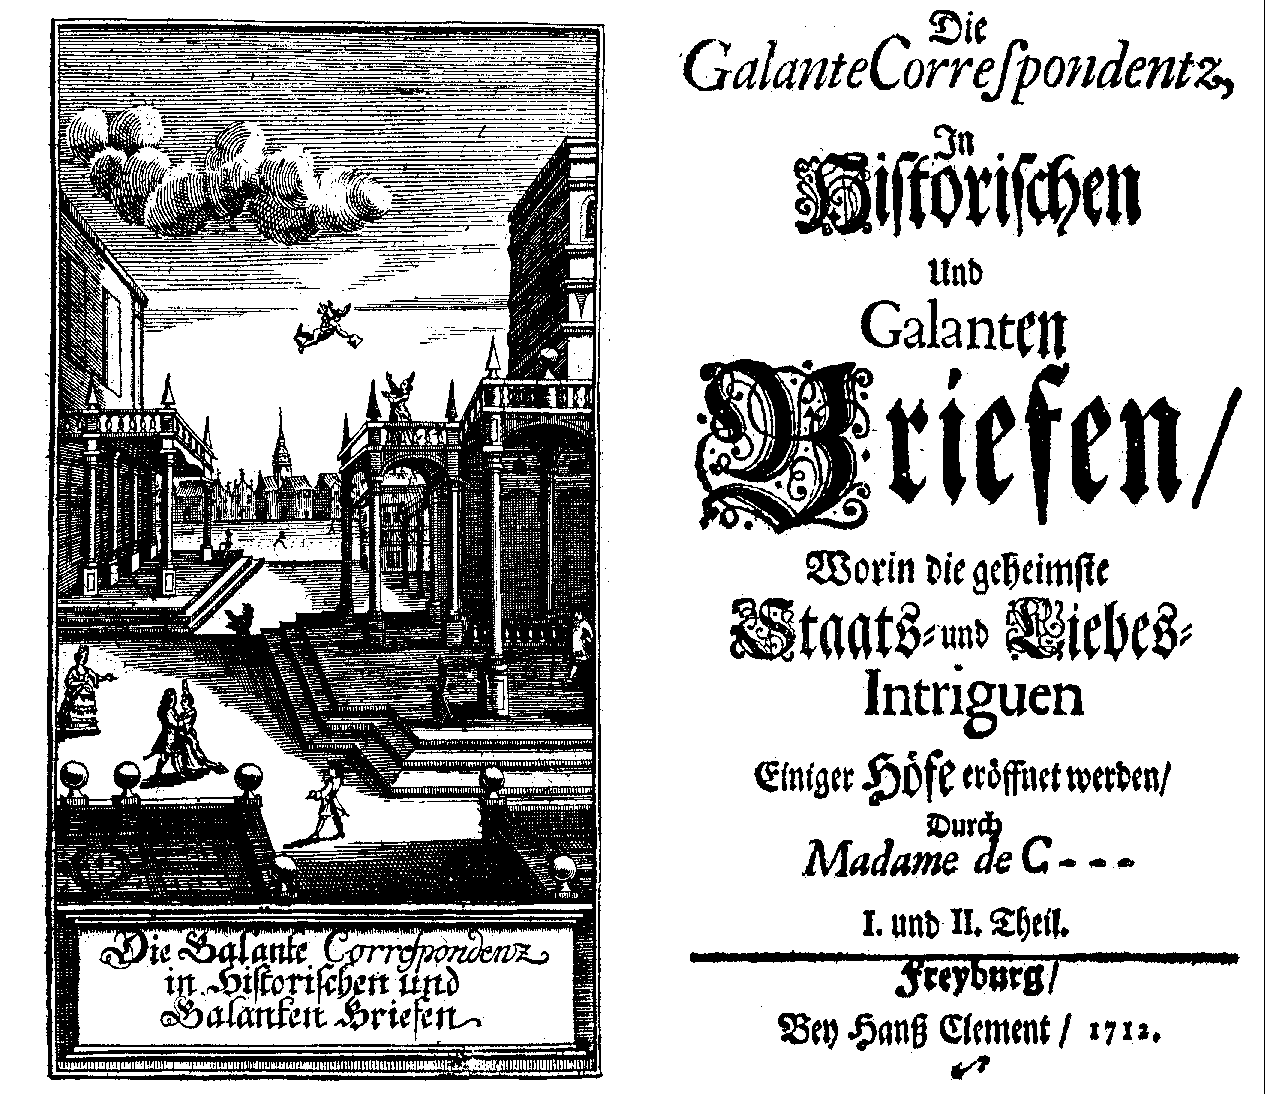 [Anne Marguerite Petit DuNoyer =] Madame de C---, Die galante Correspondentz, 1-2 (Freyburg, H. Clement, 1712).